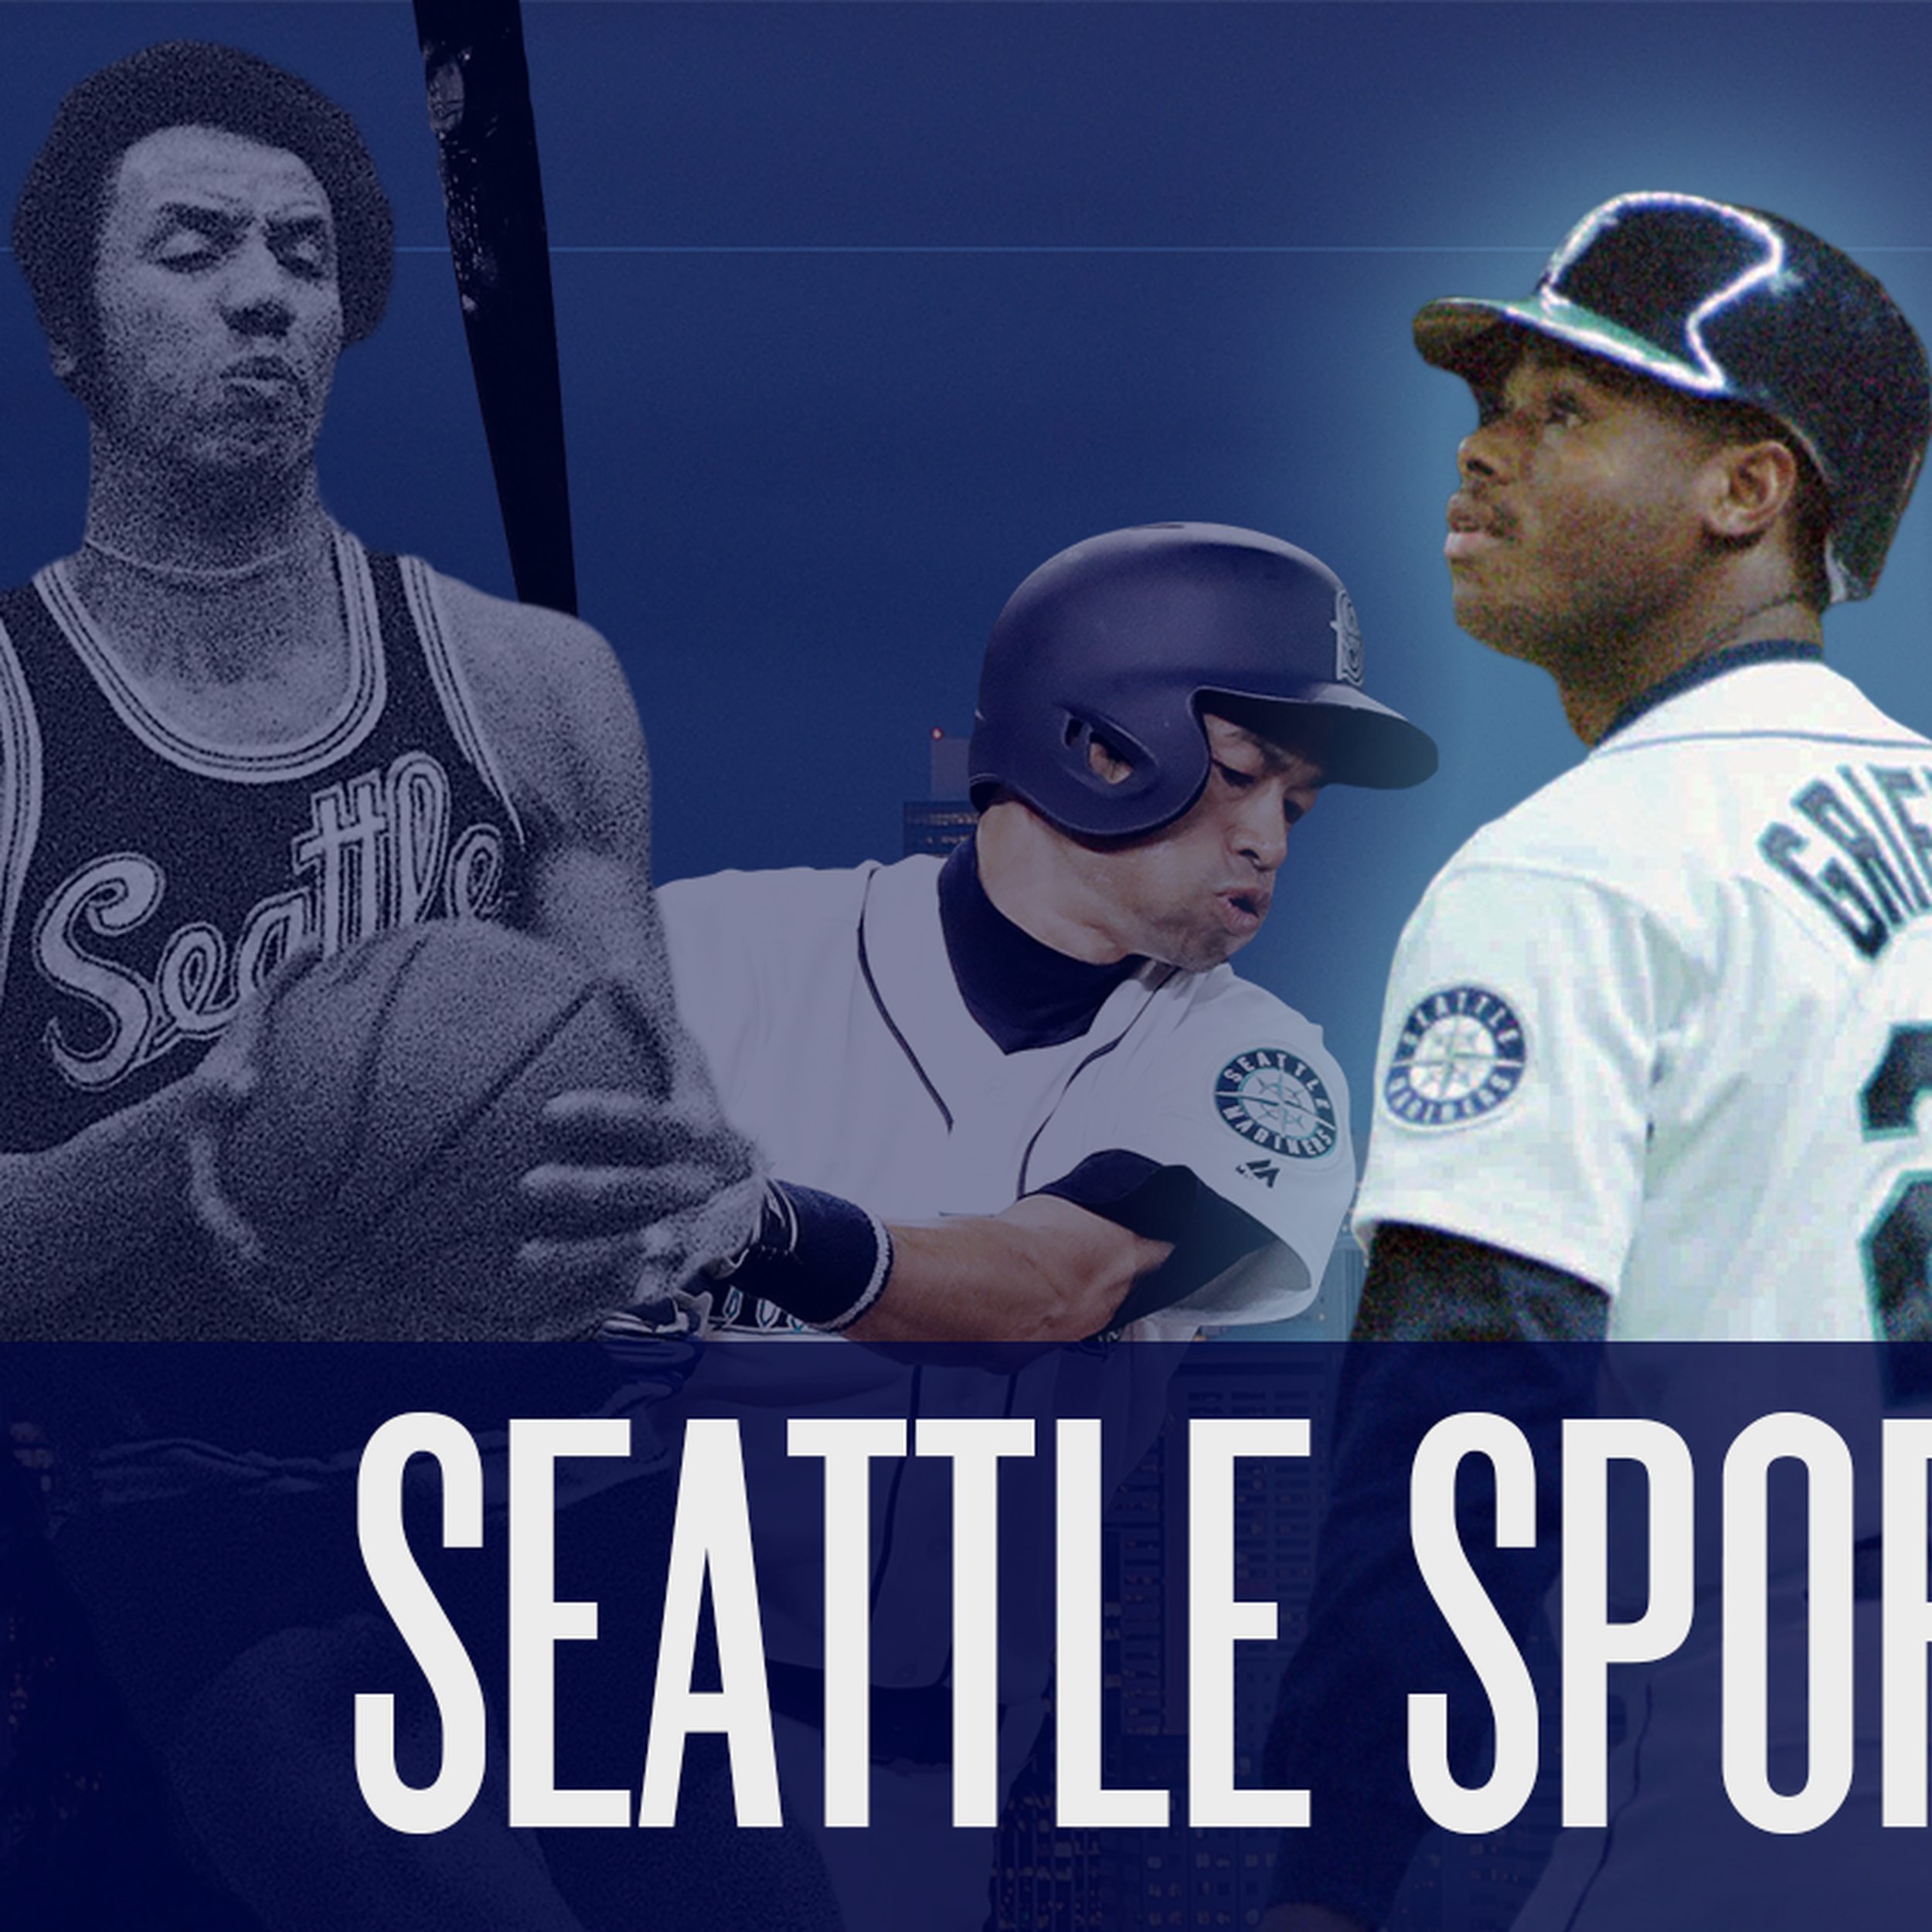 Seattle Pilots  Seattle mariners baseball, Seattle sports